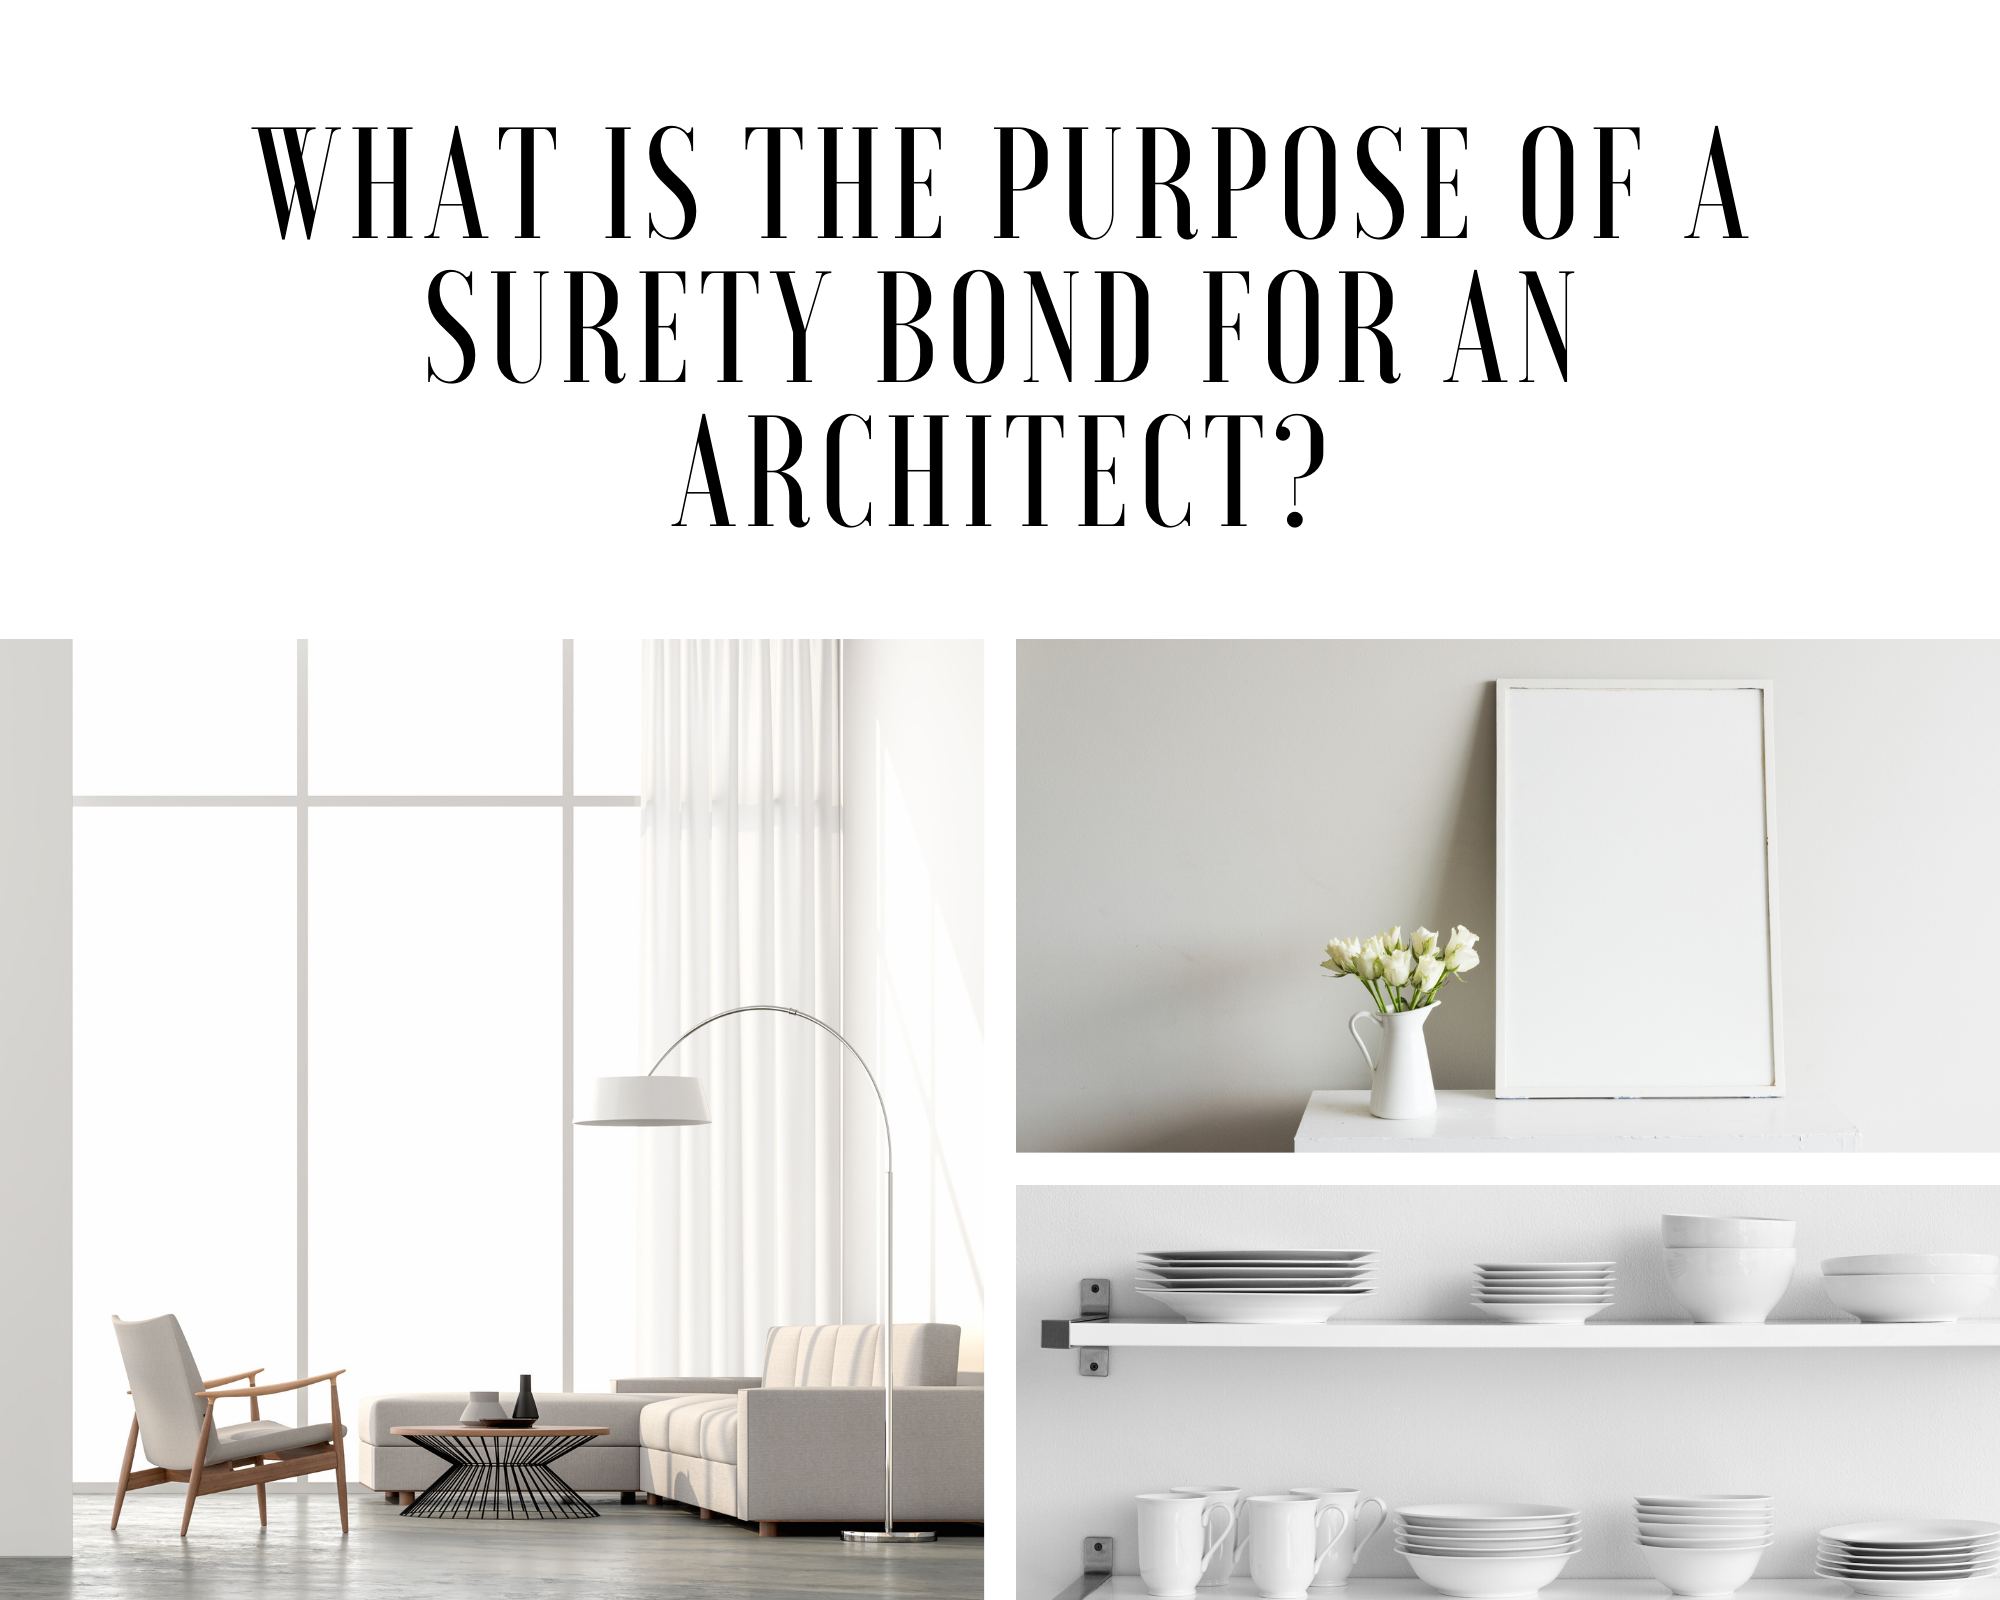 surety bond - what is a surety bond - minimalist interior design in white